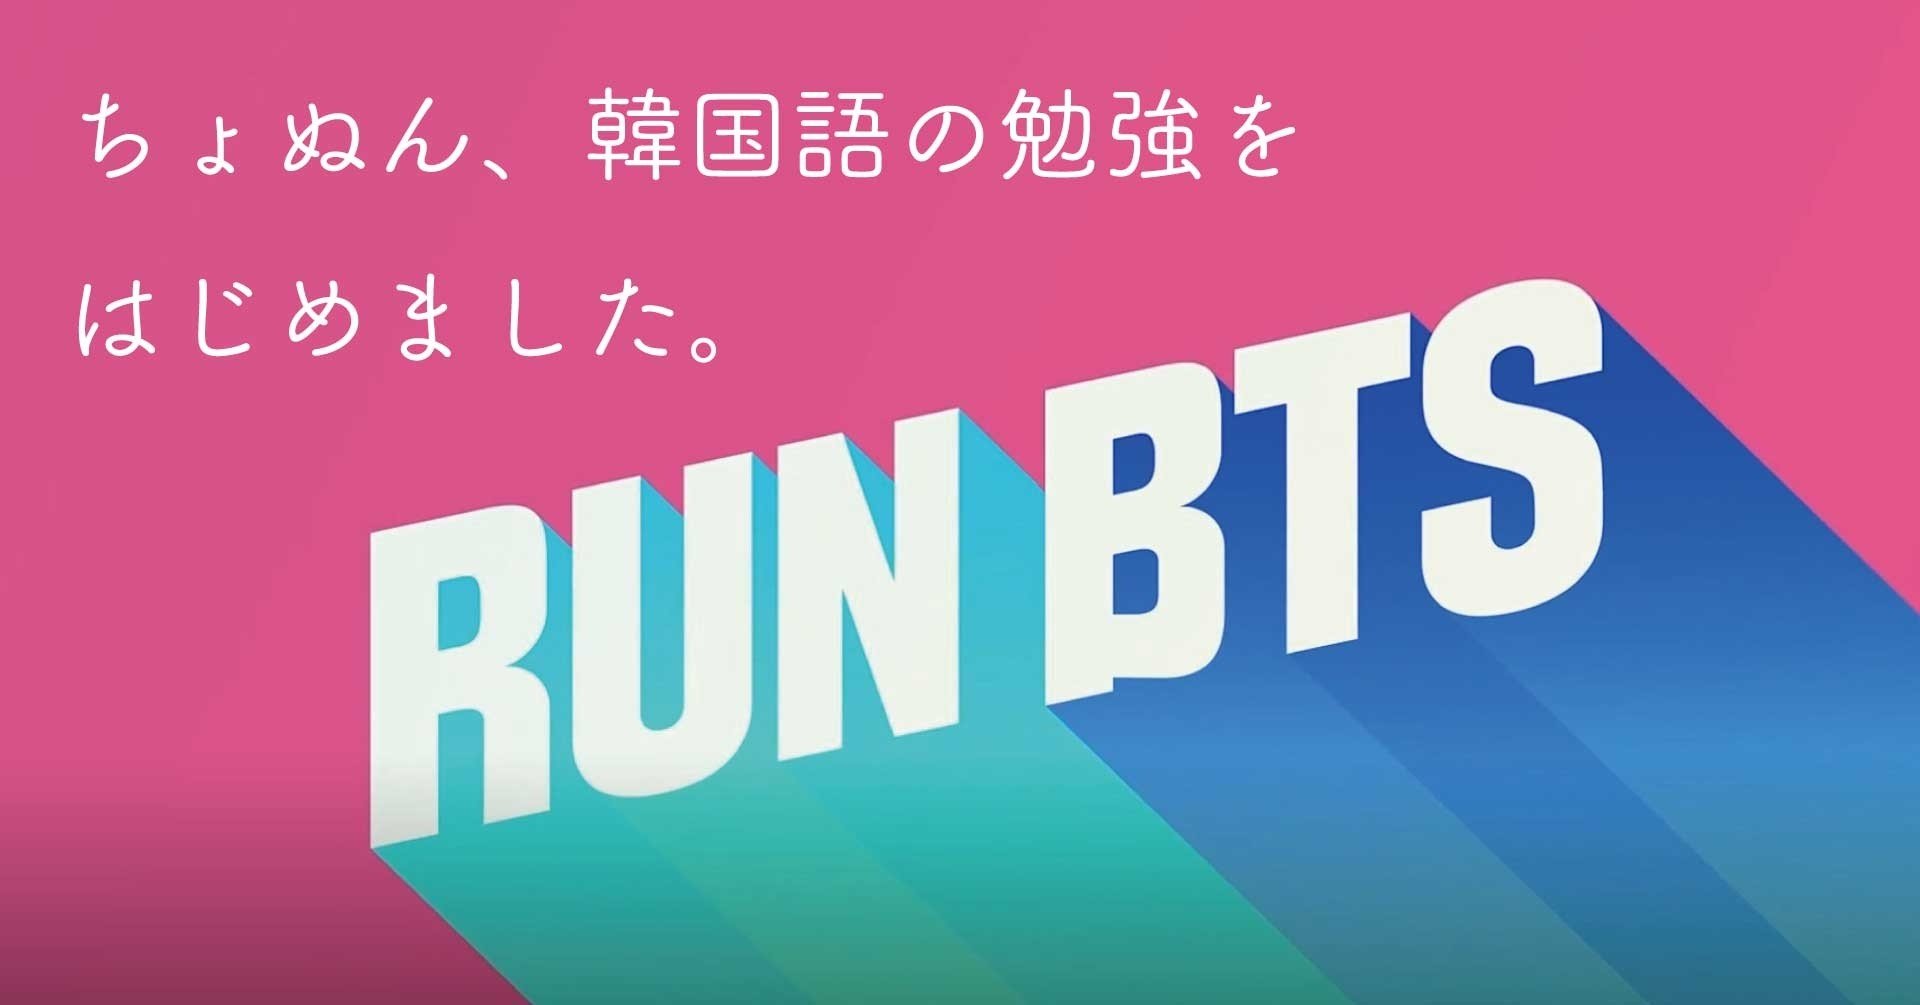 ちょぬん 韓国語の勉強を始めました Run Btsを見て覚えた韓国語 Part1 Kucchi Exp Note